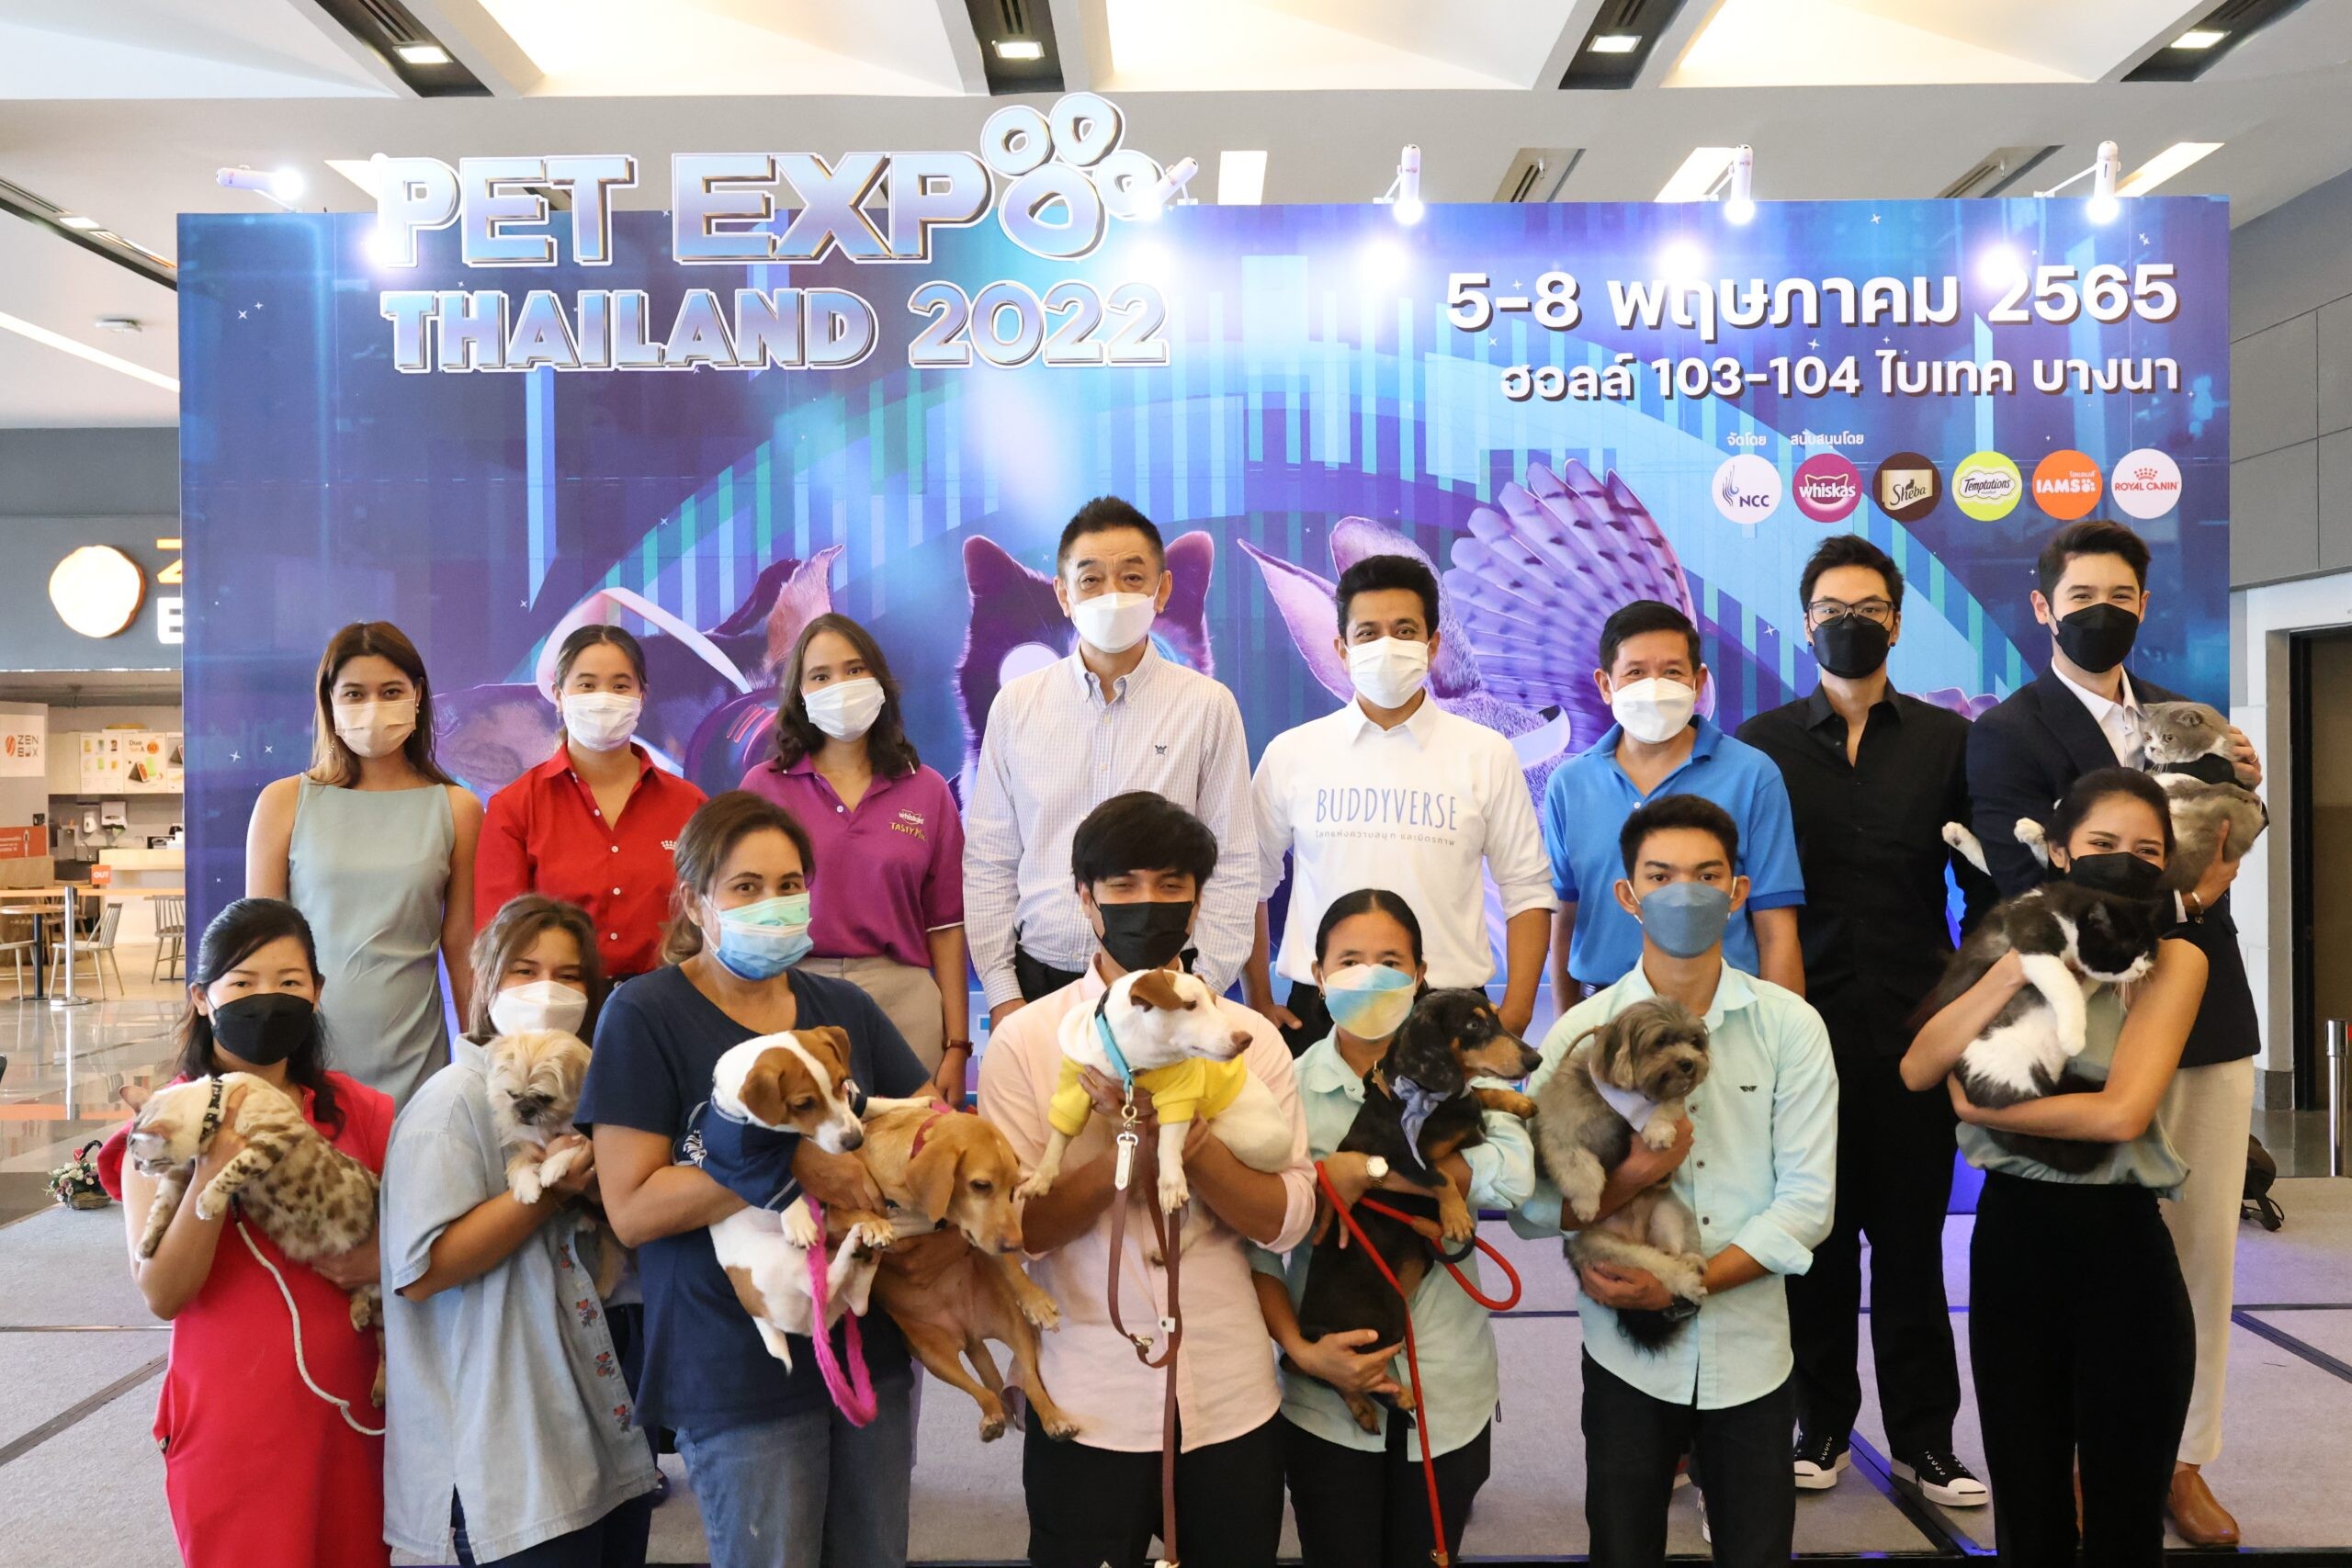 พร้อมแล้ว PET Expo Thailand 2022 ครั้งที่ 22 กับธีมสุดล้ำ "Petaverse" เผยปี'65 เทรนด์เทคโนโลยีนวัตกรรมสัตว์เลี้ยงมาแรง